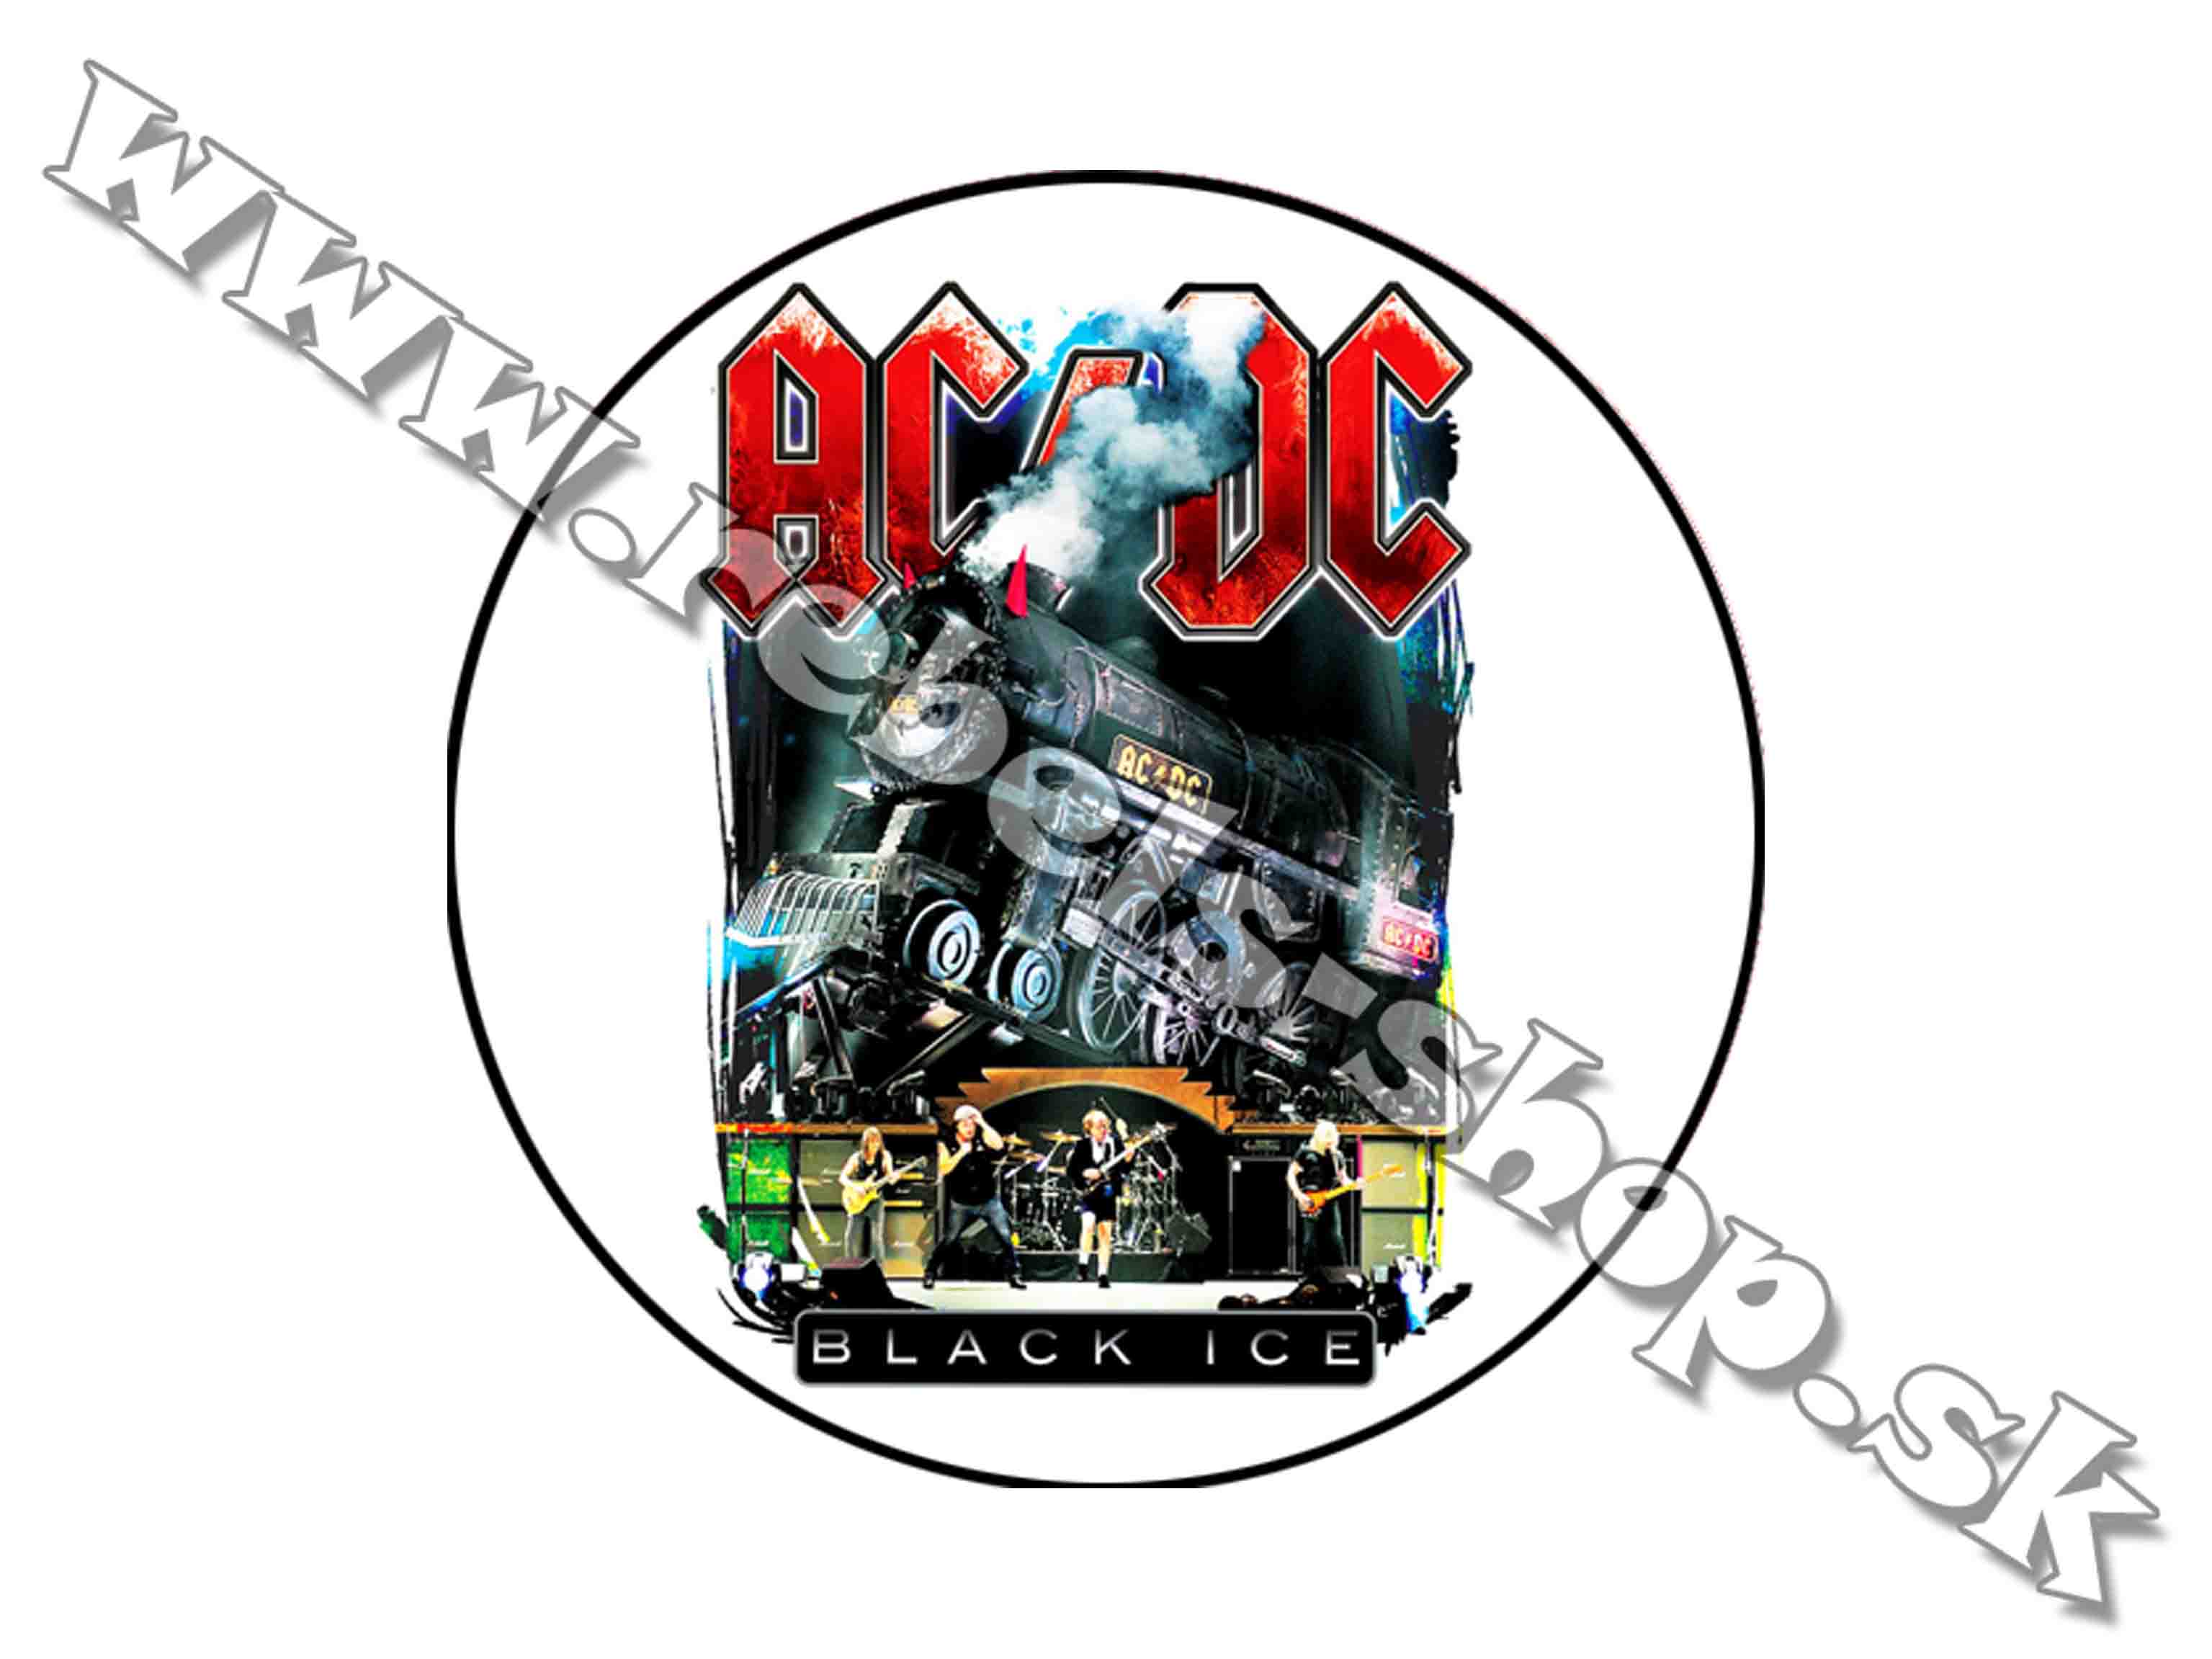 Odznak "ACDC"